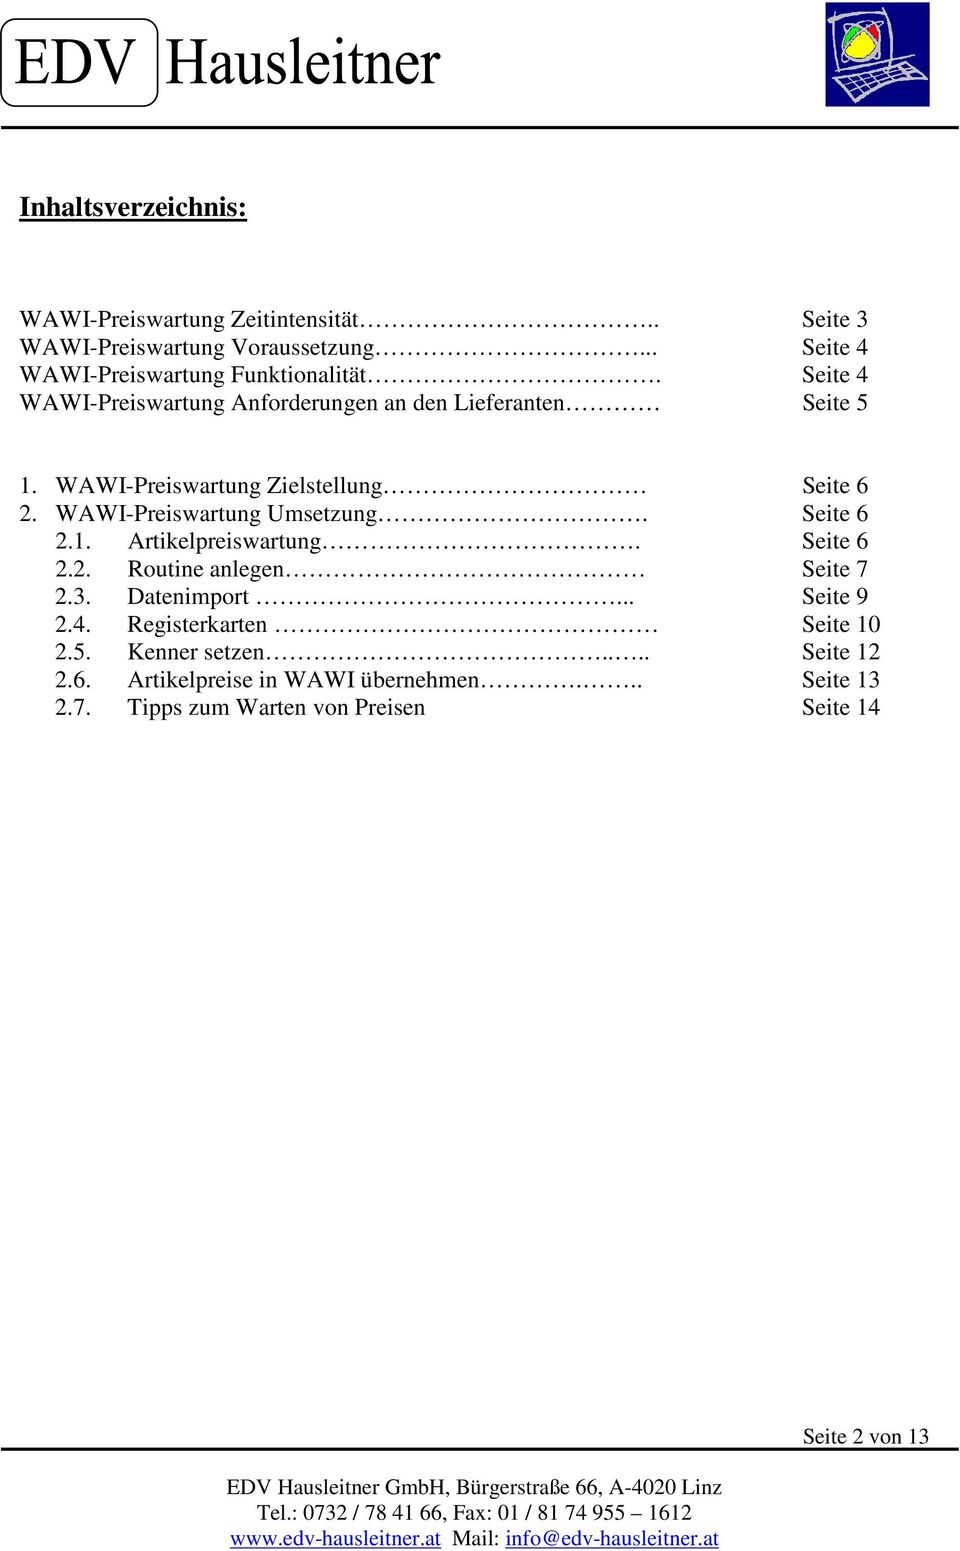 WAWI-Preiswartung Umsetzung. Seite 6 2.1. Artikelpreiswartung. Seite 6 2.2. Routine anlegen Seite 7 2.3. Datenimport... Seite 9 2.4.